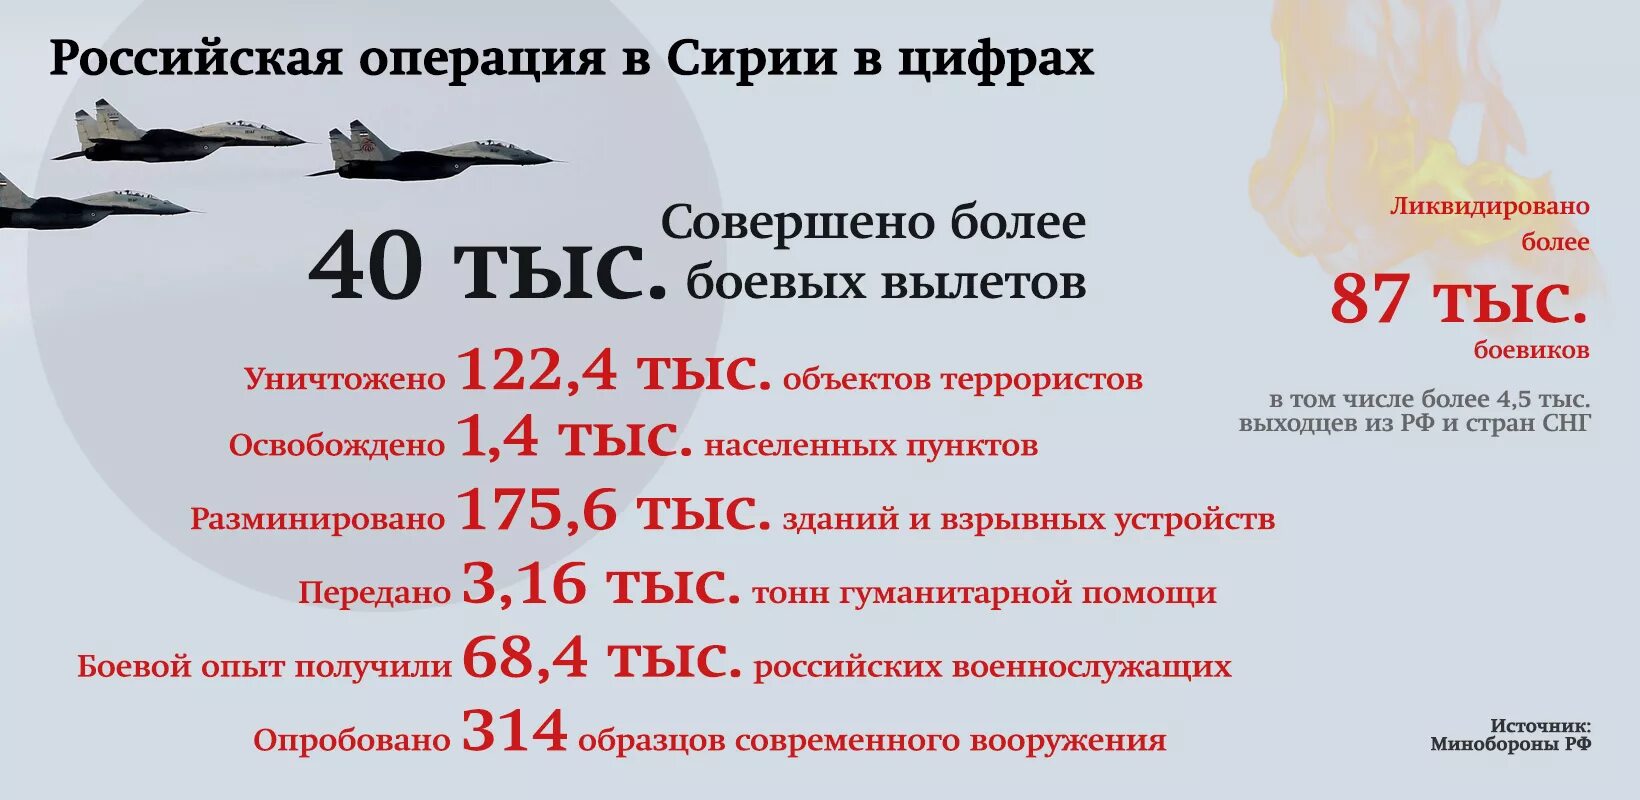 Сколько российских солдат погибло на войне